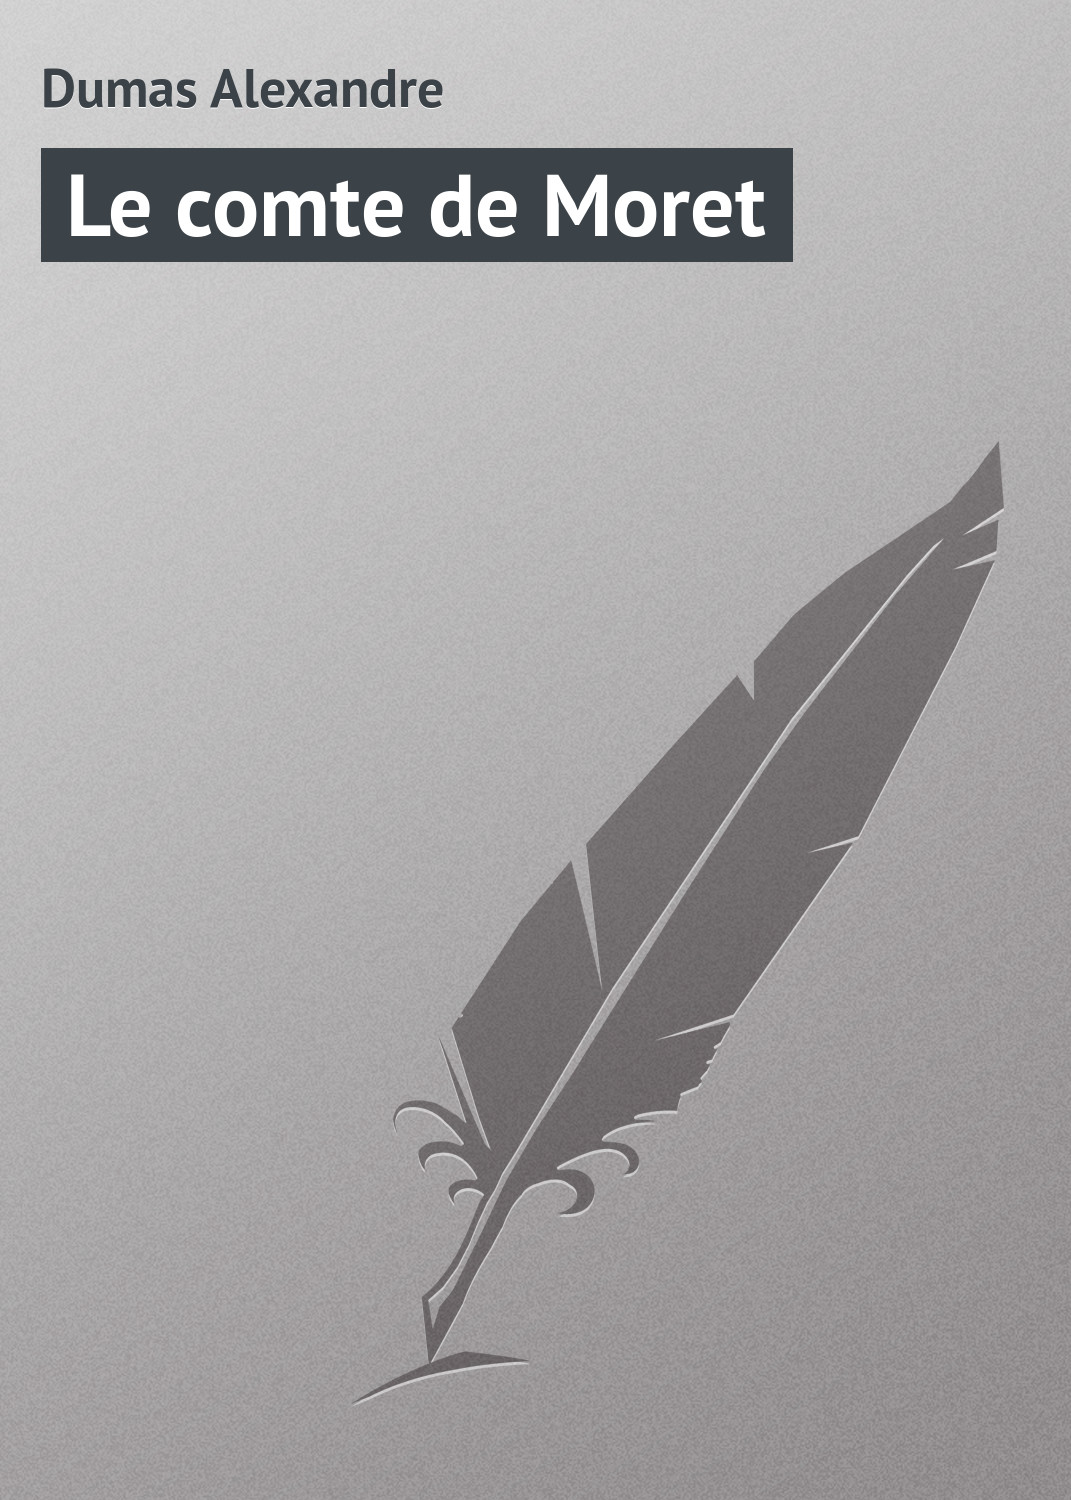 Книга Le comte de Moret из серии , созданная Alexandre Dumas, может относится к жанру Зарубежная классика. Стоимость электронной книги Le comte de Moret с идентификатором 23166635 составляет 5.99 руб.